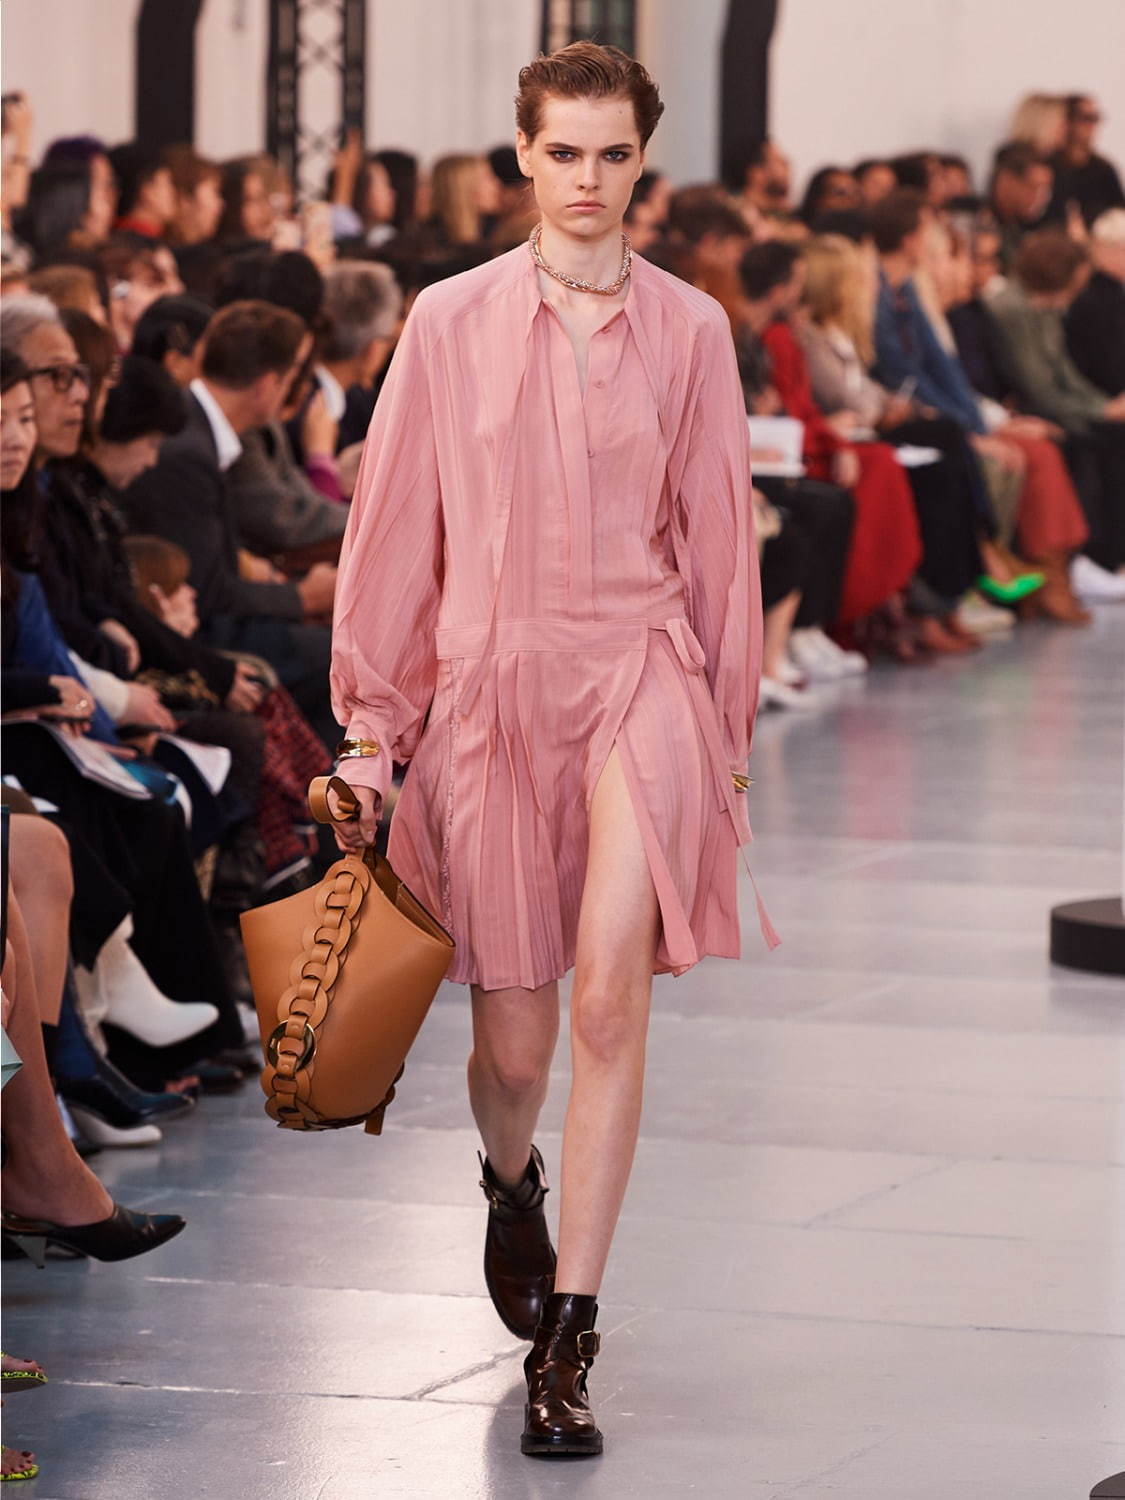 年春コーデは くすみピンク でキマリ 甘すぎない 大人着こなし術を一挙紹介 ファッションプレス